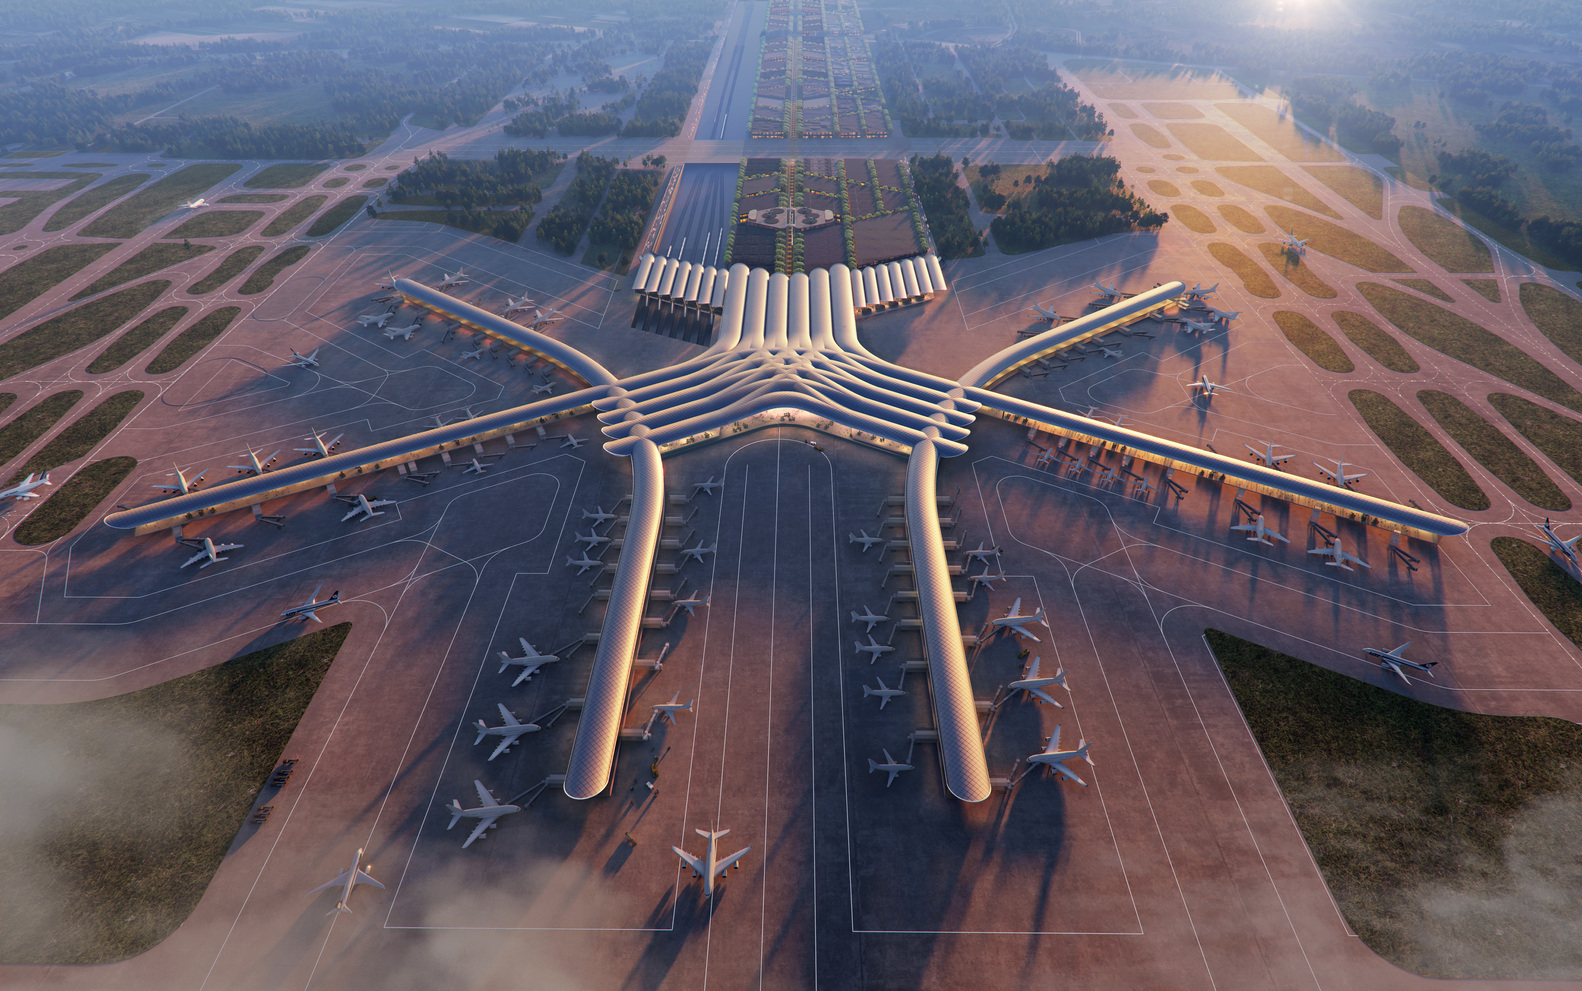 A várhatóan 2027-re elkészülő, intermodális CPK repülőtér látványterve (kép forrása: Foster + Partners / archdaily.com) 